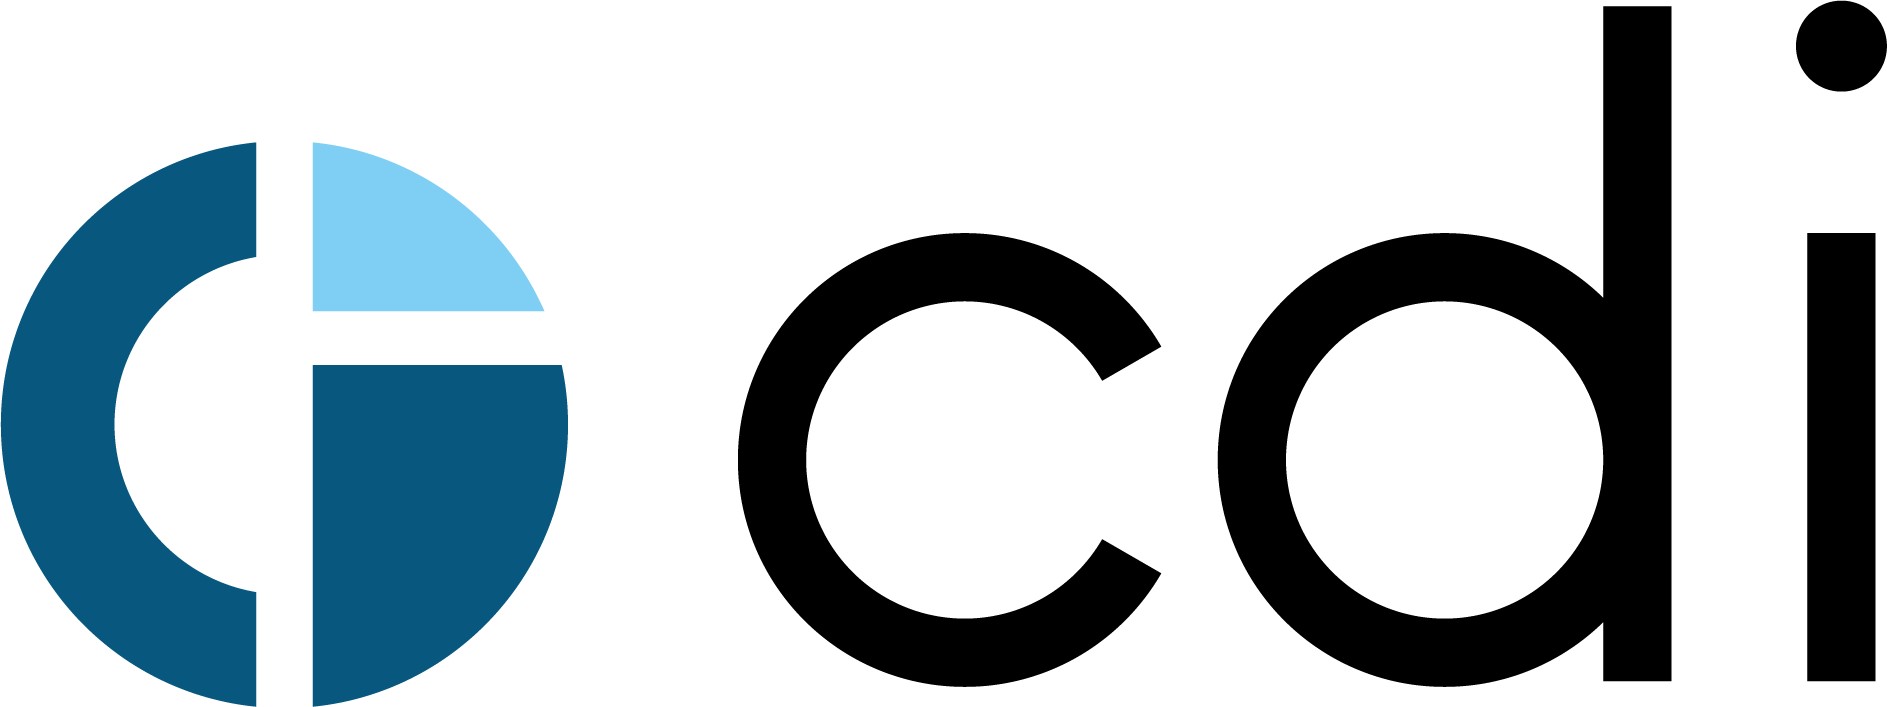 CDI BIOTECHNOLOGY (SHANGHAI) CO., LTD._logo